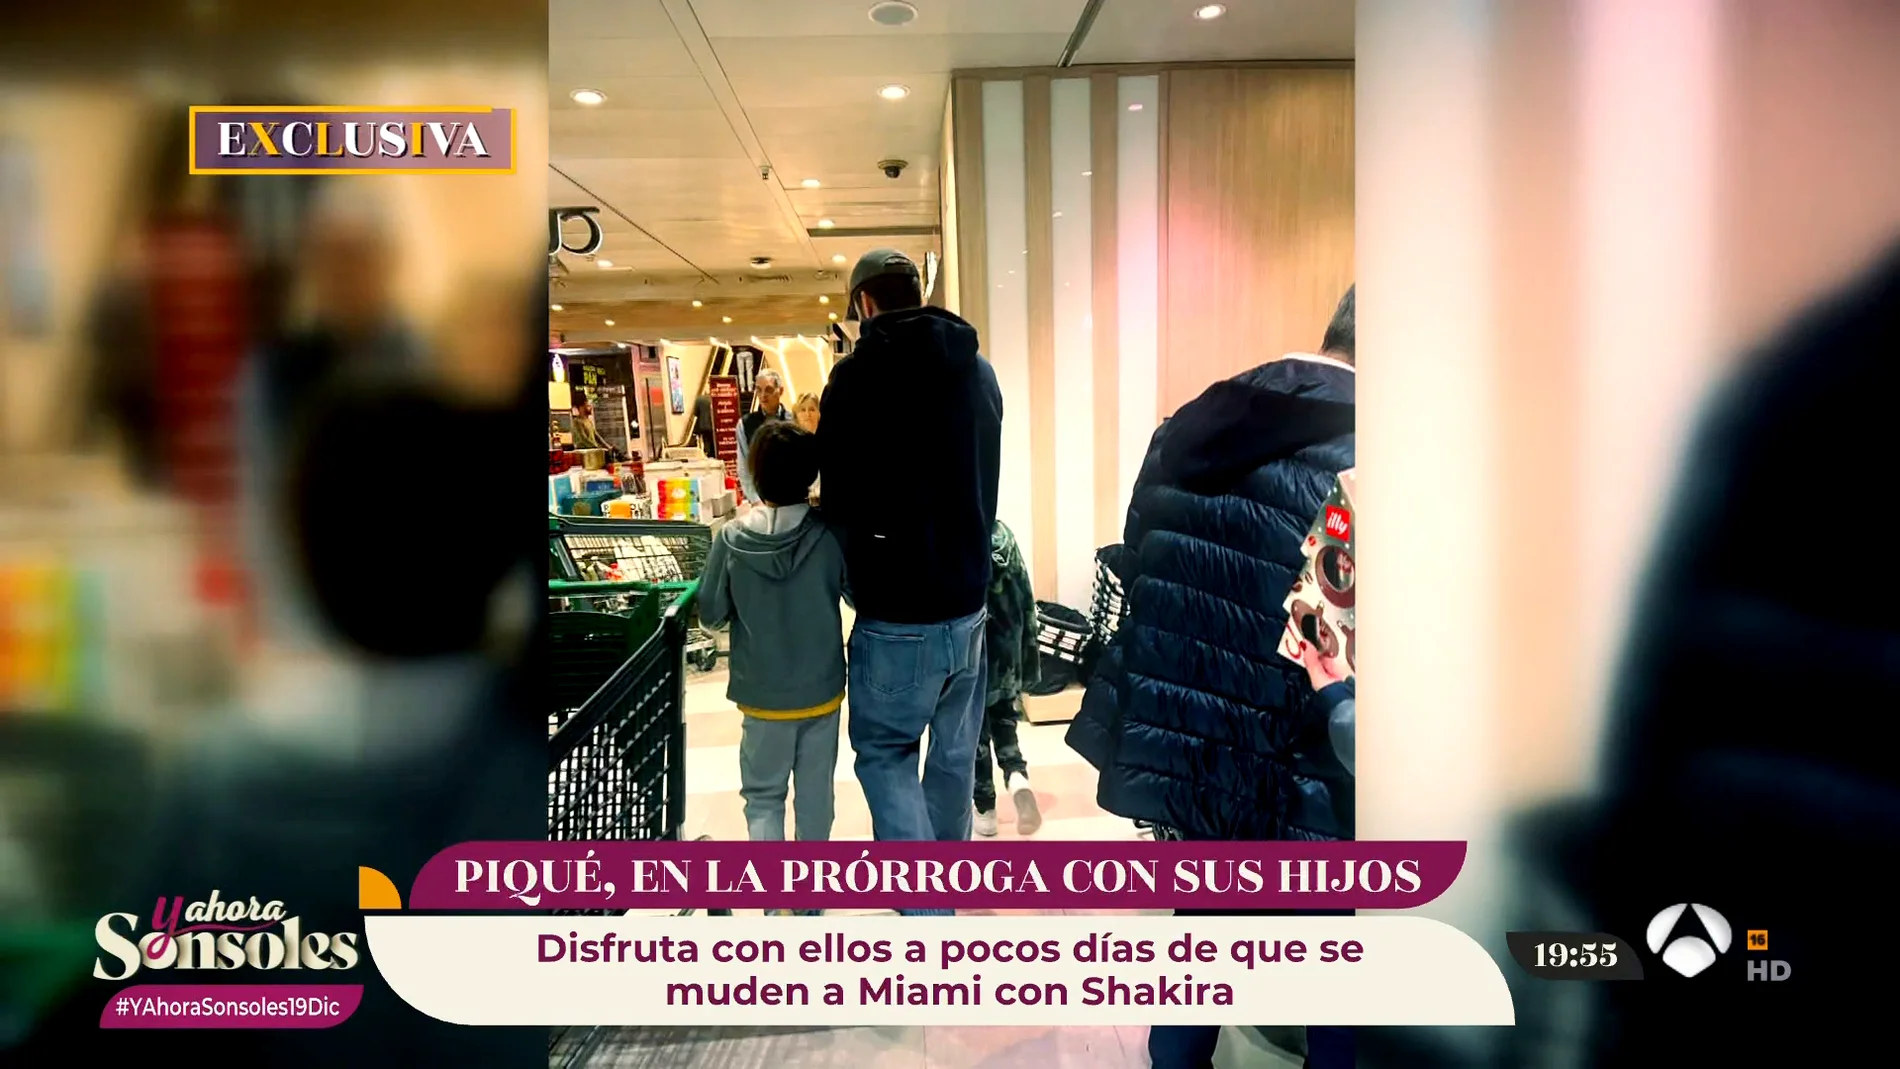 Gerard Piqué disfruta de los últimos días de sus hijos en España antes de volar a Miami con Shakira